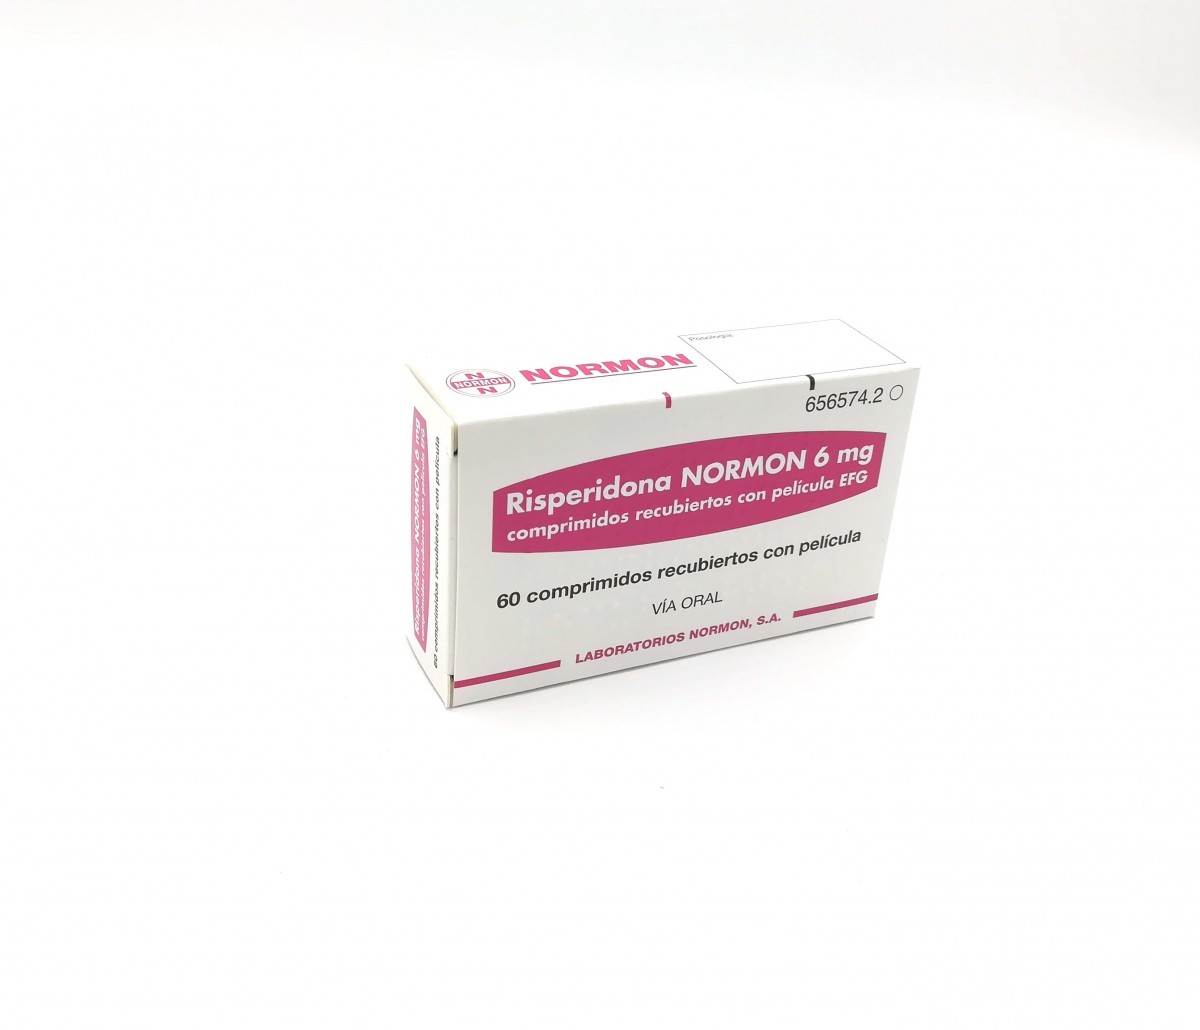 RISPERIDONA NORMON 6 mg COMPRIMIDOS RECUBIERTOS CON PELICULA EFG, 500 comprimidos fotografía del envase.